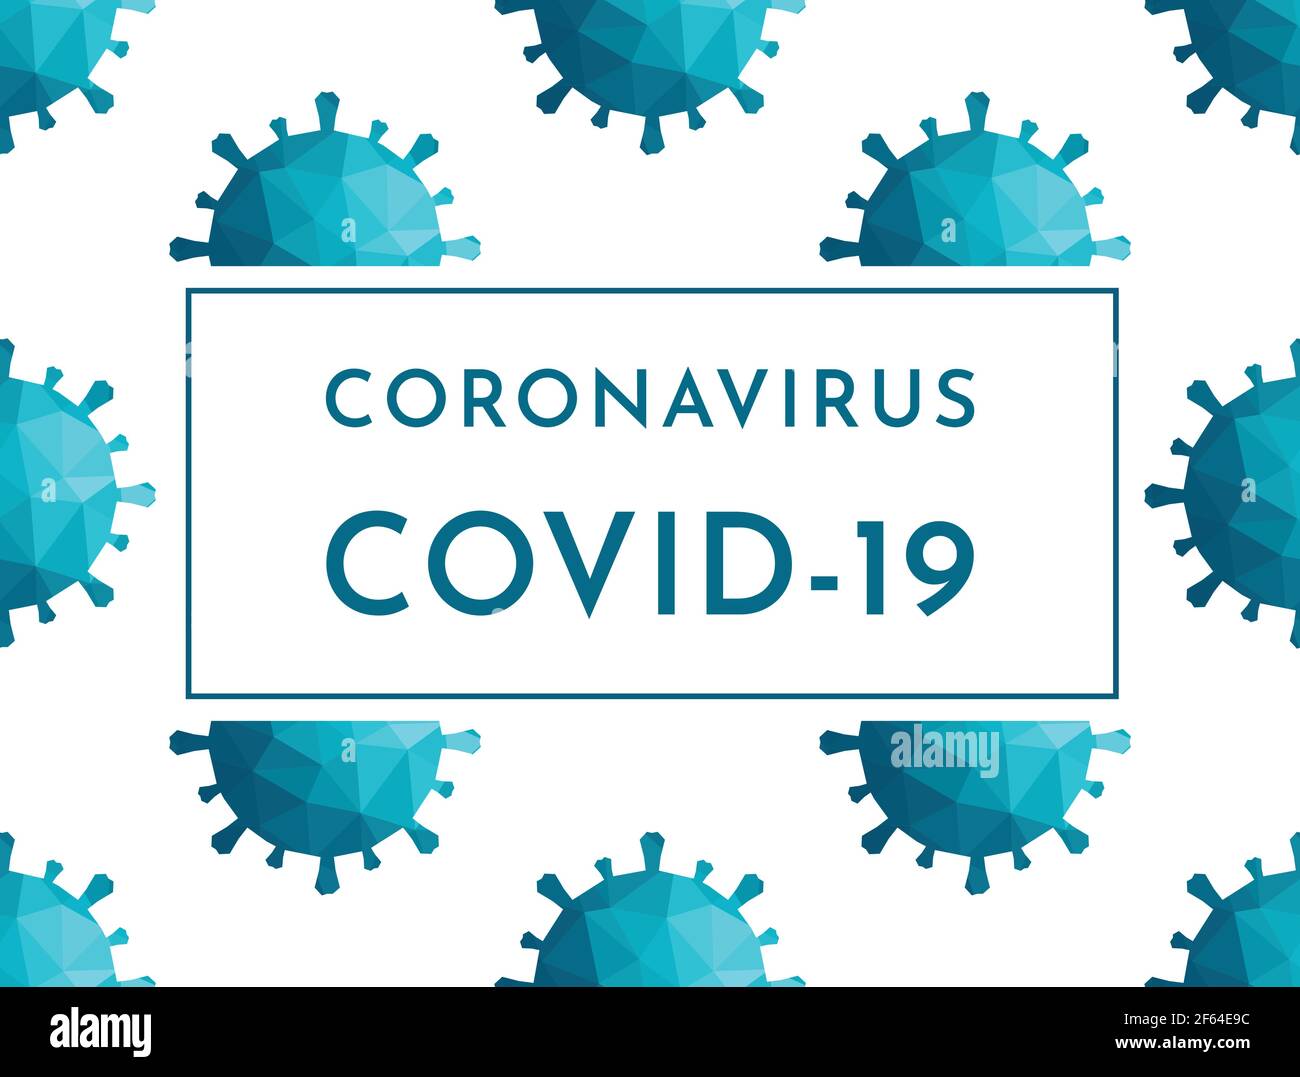 Immagine vettoriale piatta, banner reale con testo - Coronavirus COVID-19 su spazio vuoto. Pandemia pericolosa nel mondo, quarantena globale. Illustrazione Vettoriale